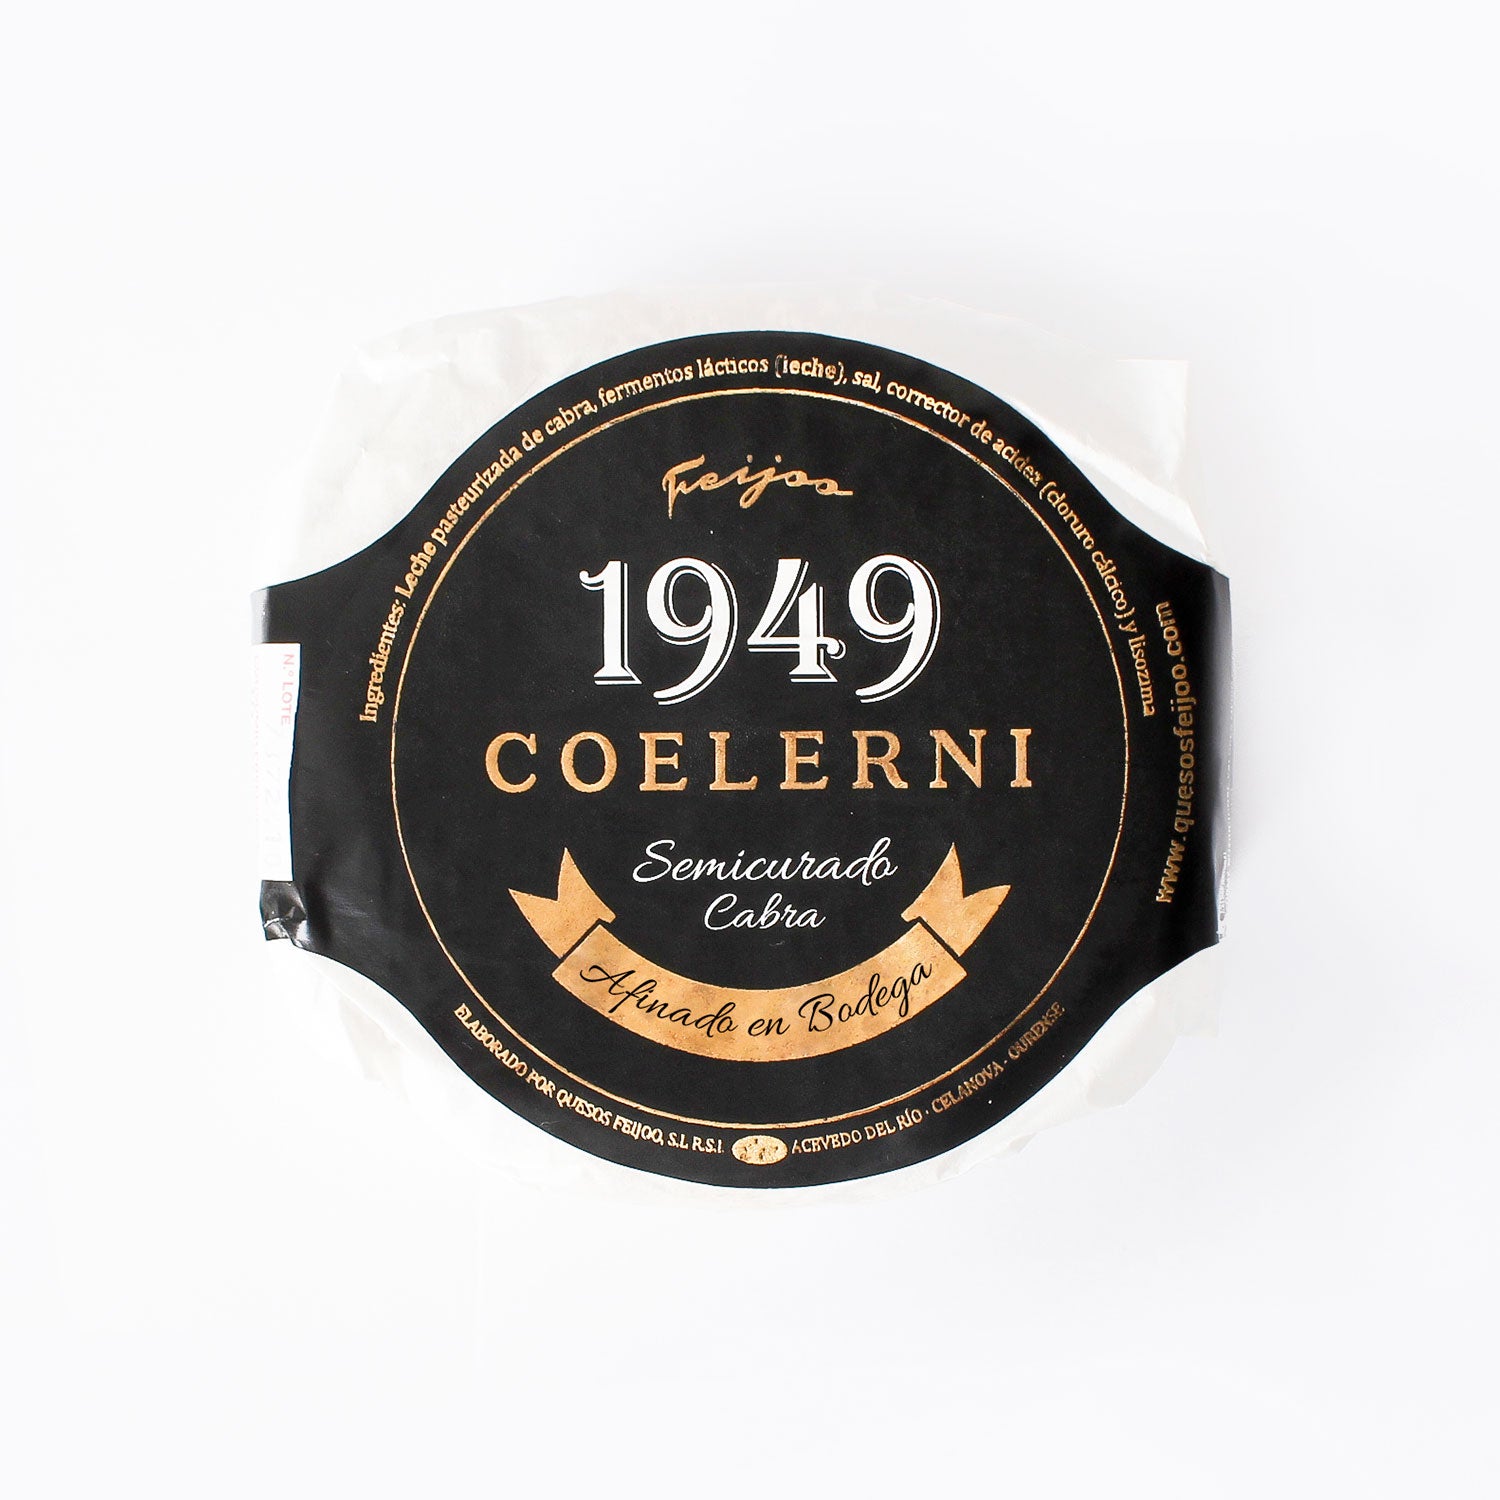 Queso de cabra semicurado Coelerni elaborado en galicia, madurado en bodega. Imagen principal con etiqueta negra, letras doradas y envoltorio en papel blanco.